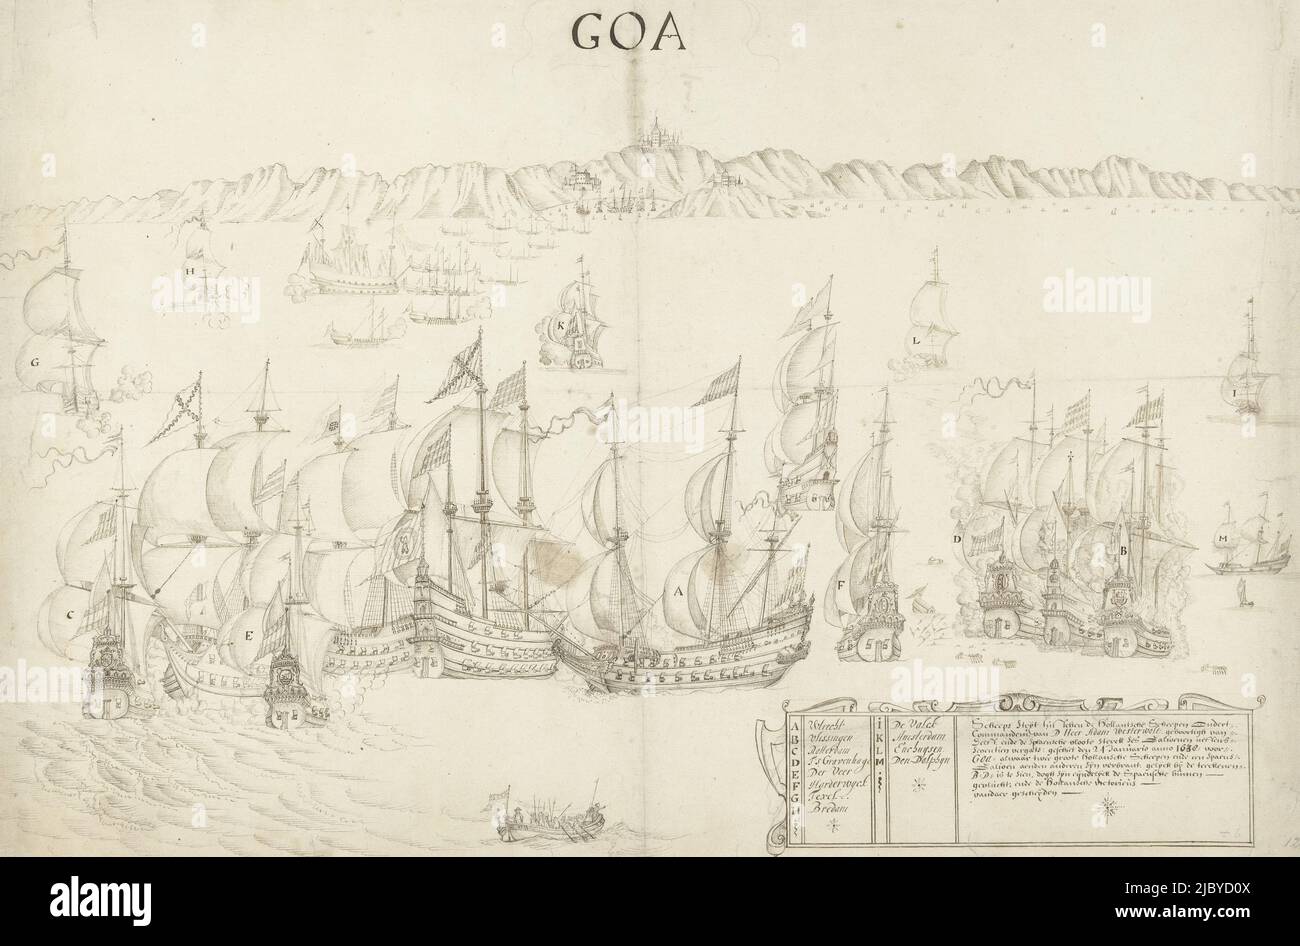 Bataille navale entre les navires néerlandais et espagnols au large de la côte à Goa, 1638, anonyme, 1638, bataille navale entre la flotte hollandaise sous Adam van Westerwolt et une flotte espagnole au large de la côte à Goa, 24 janvier 1638. En bas à droite une cartouche avec le titre et les noms des navires néerlandais A-M., rapporteur pour avis: Anonyme, pays-Bas du Nord, 1638, papier, h 412 mm × l 630 mm Banque D'Images